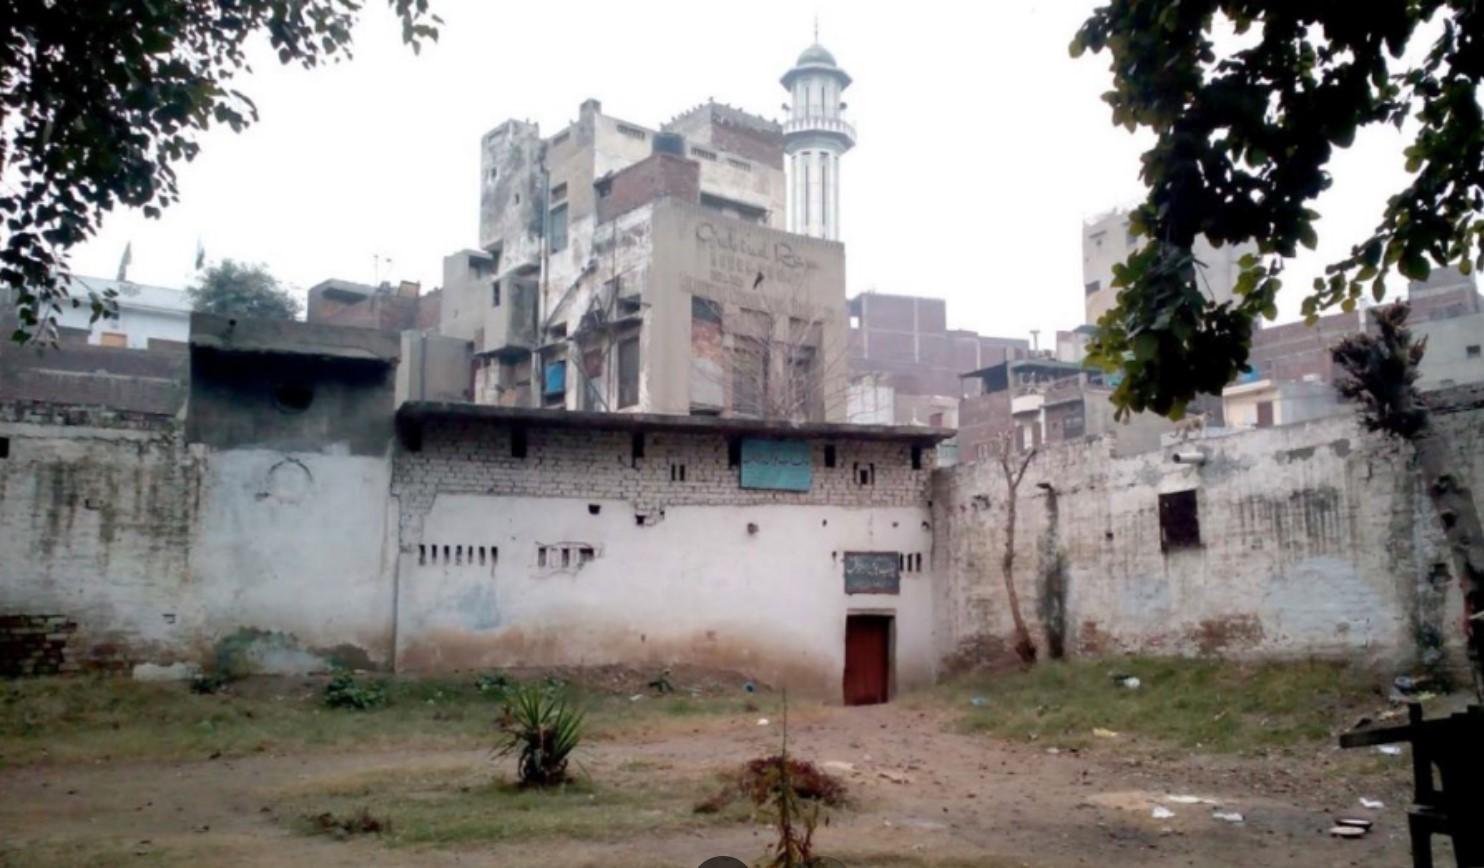 Gurudwara Baoli Sahib, Rang Mahal, Lahore